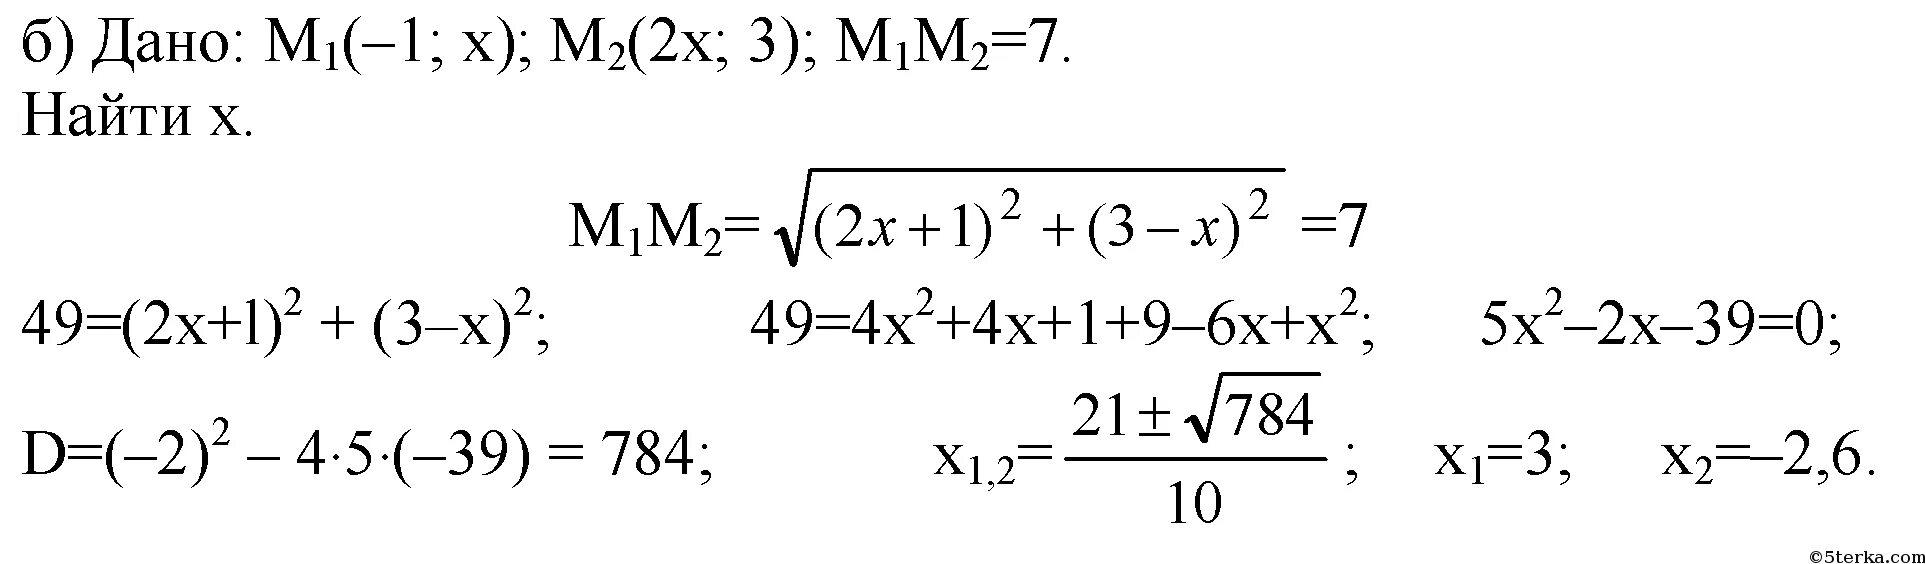 Найдите расстояние между точками если: а (-3) и в (2 1/3). Найдите расстояние между точками а1 1 2 3 и а2 -1 1 1. Расстояние между точками а(-1;3) и в(2;-1). Найти расстояние между точками a 2 0 -3.